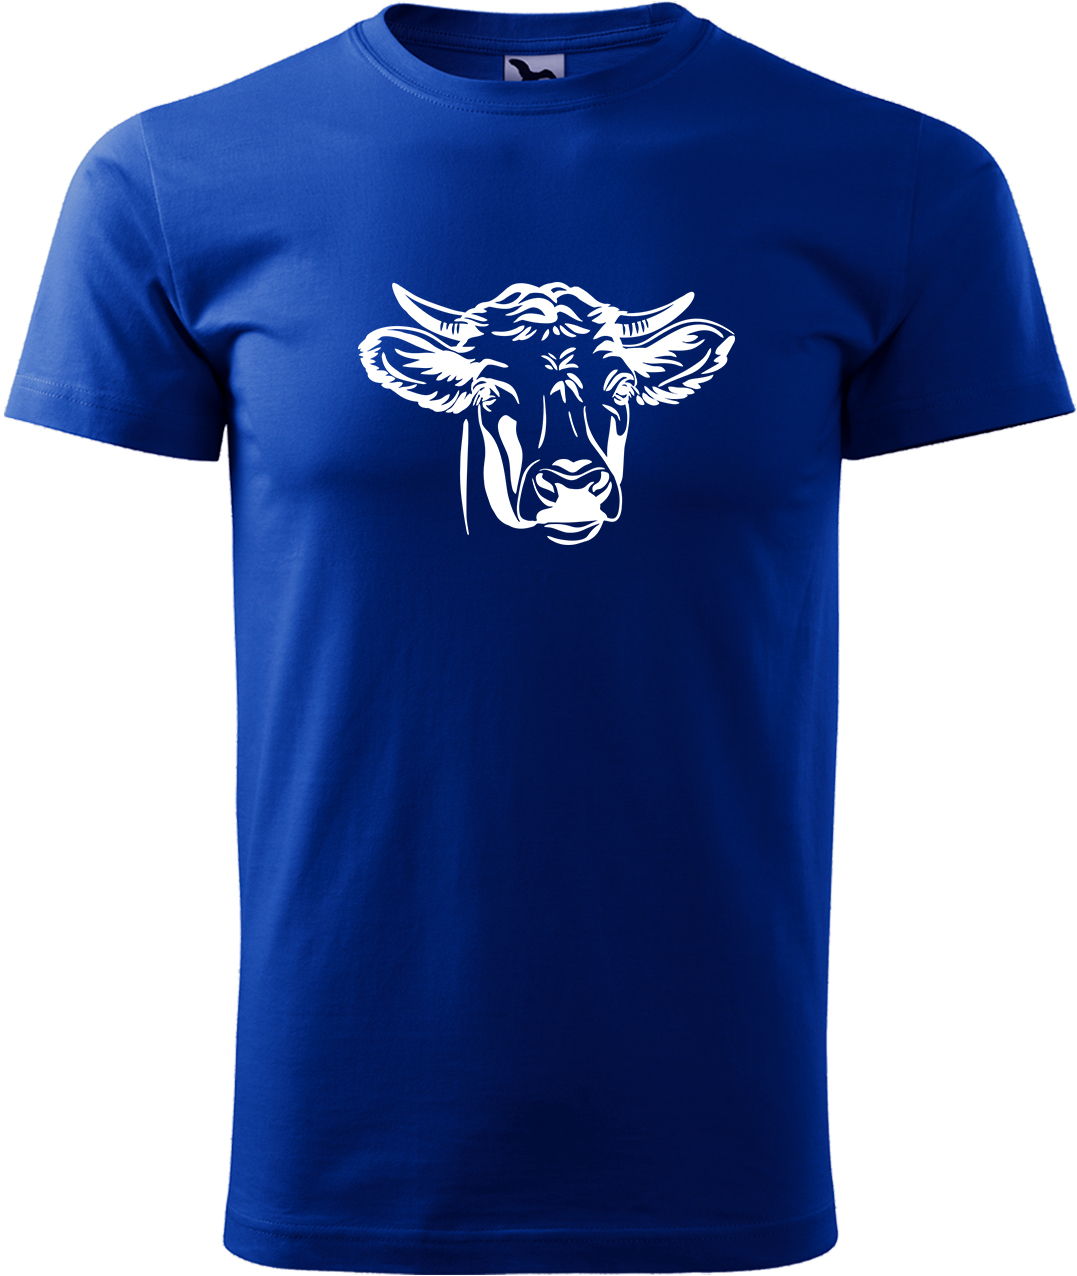 Pánské tričko s krávou - Hlava krávy Velikost: 3XL, Barva: Královská modrá (05), Střih: pánský